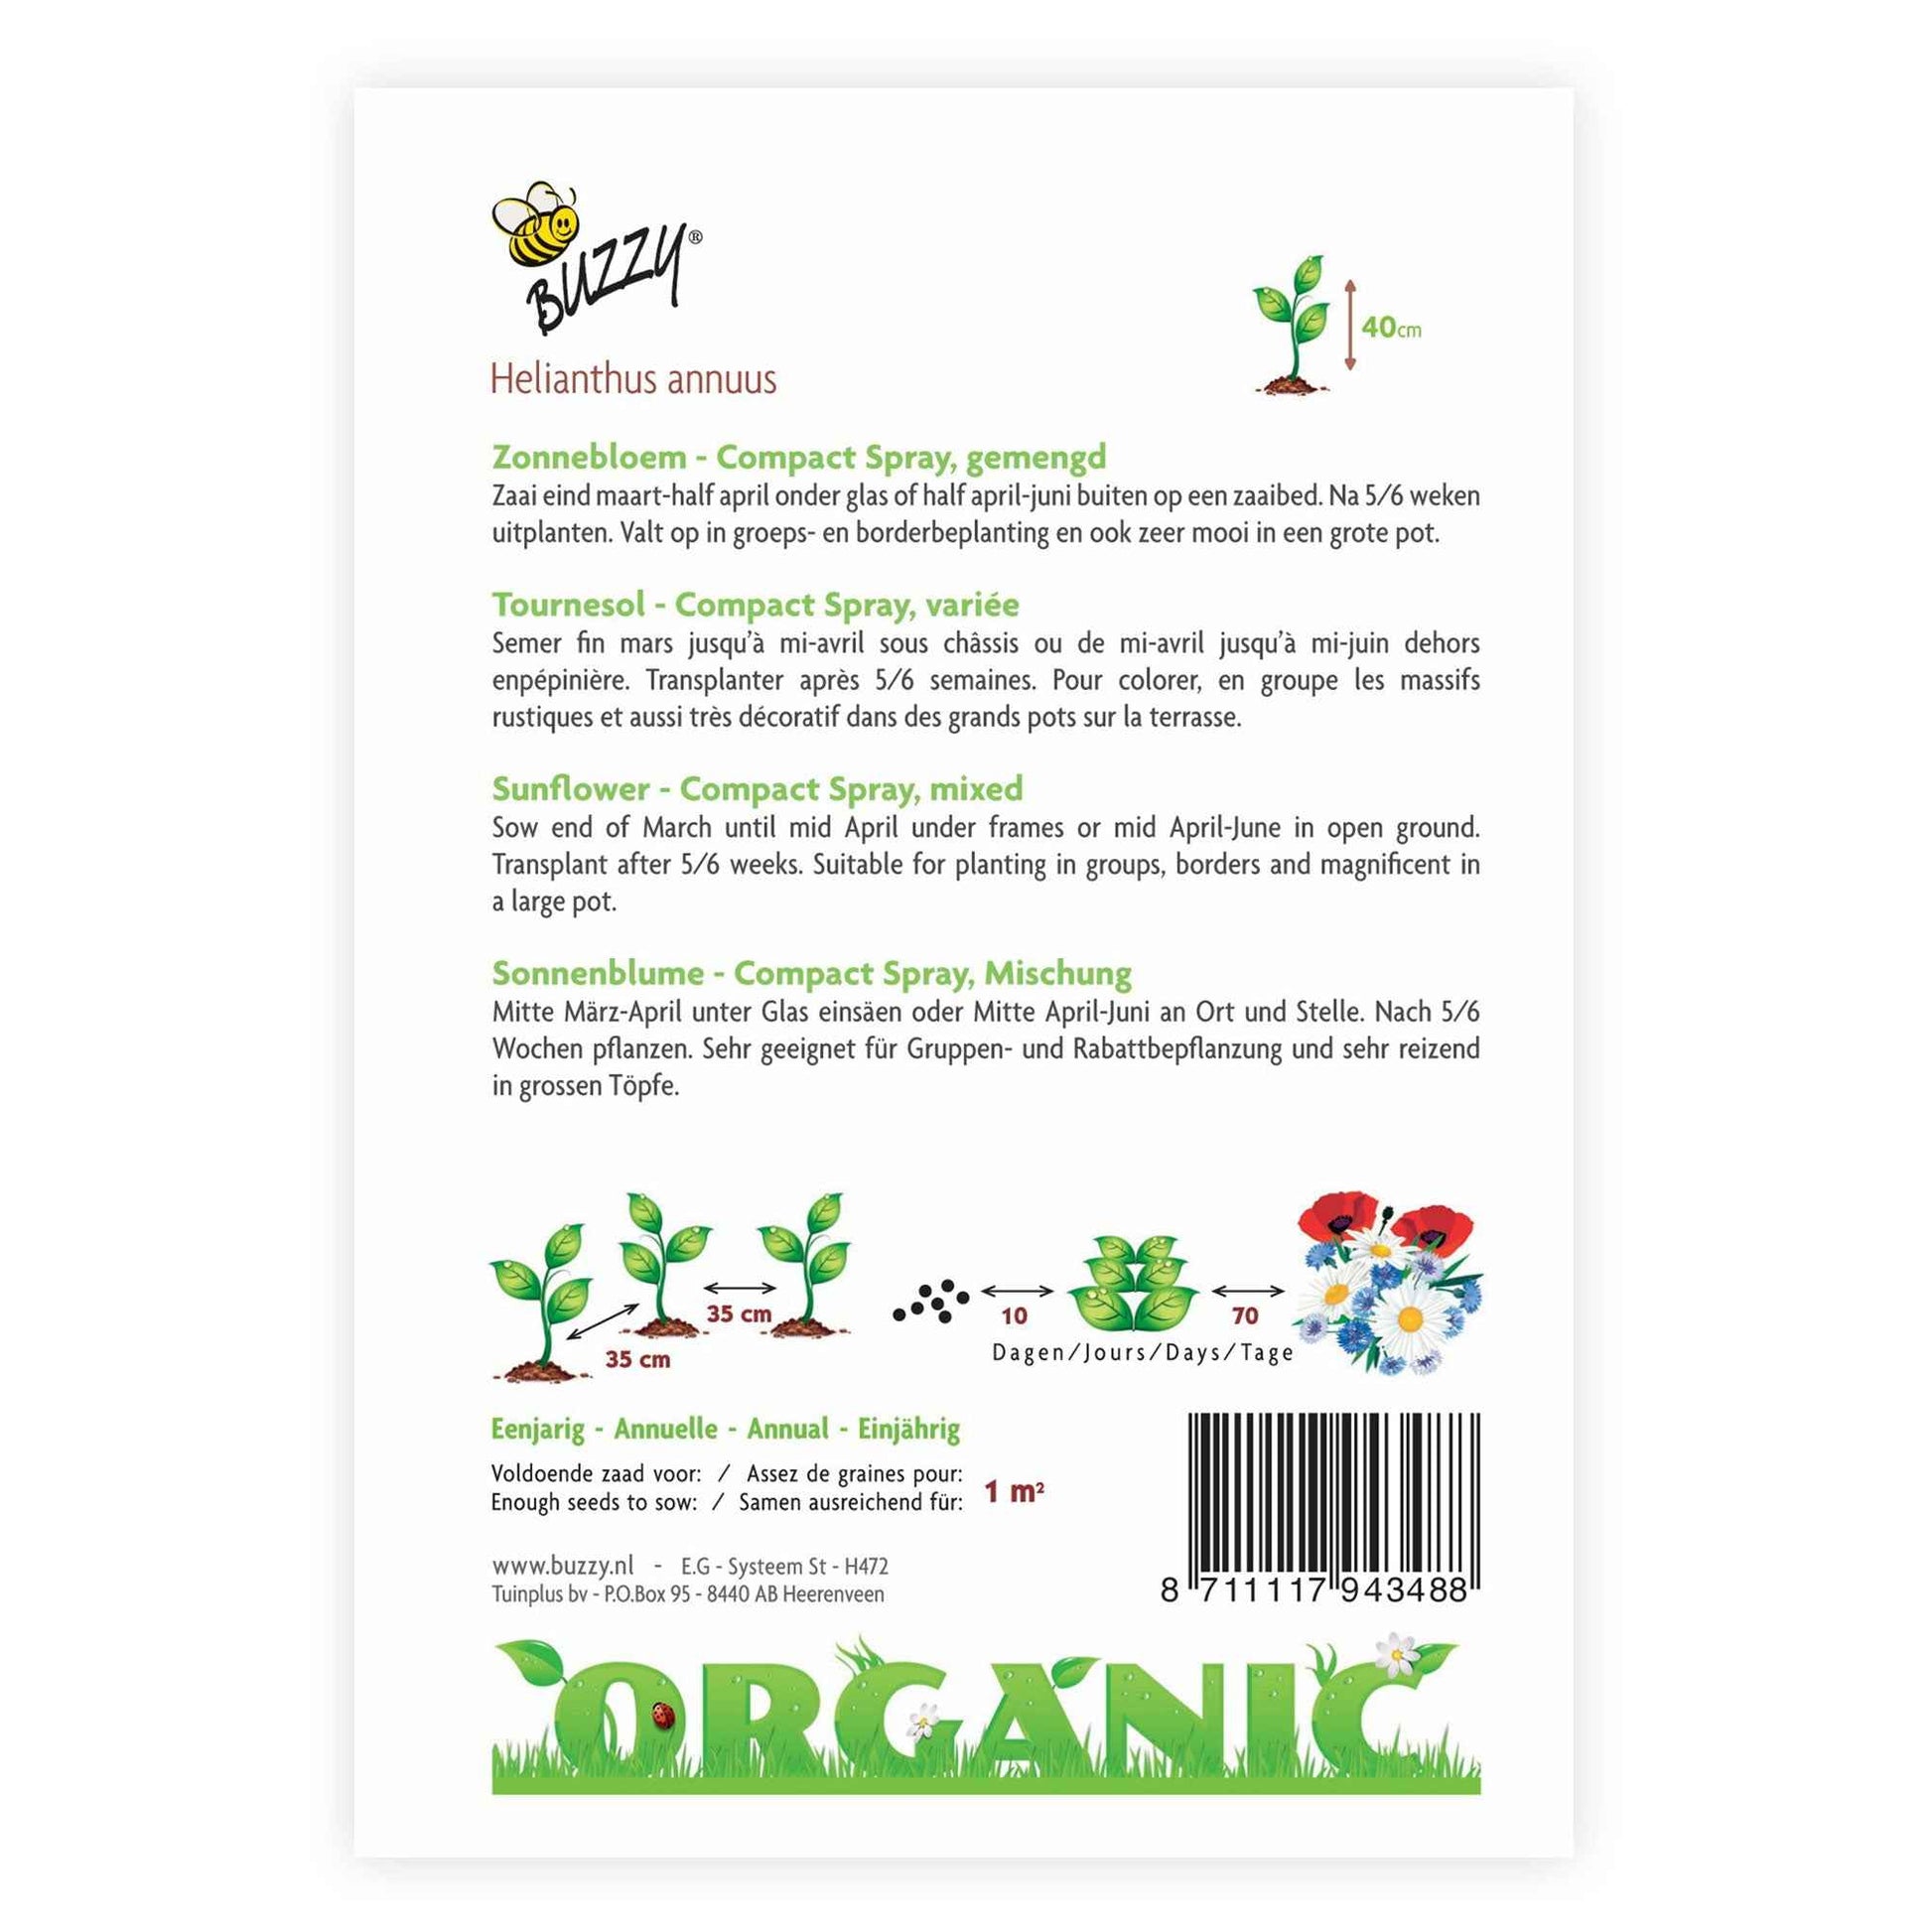 Sonnenblume Helianthus 'Compact Spray' - Biologisch gelb 3 m² - Blumensamen - Gartenpflanzen